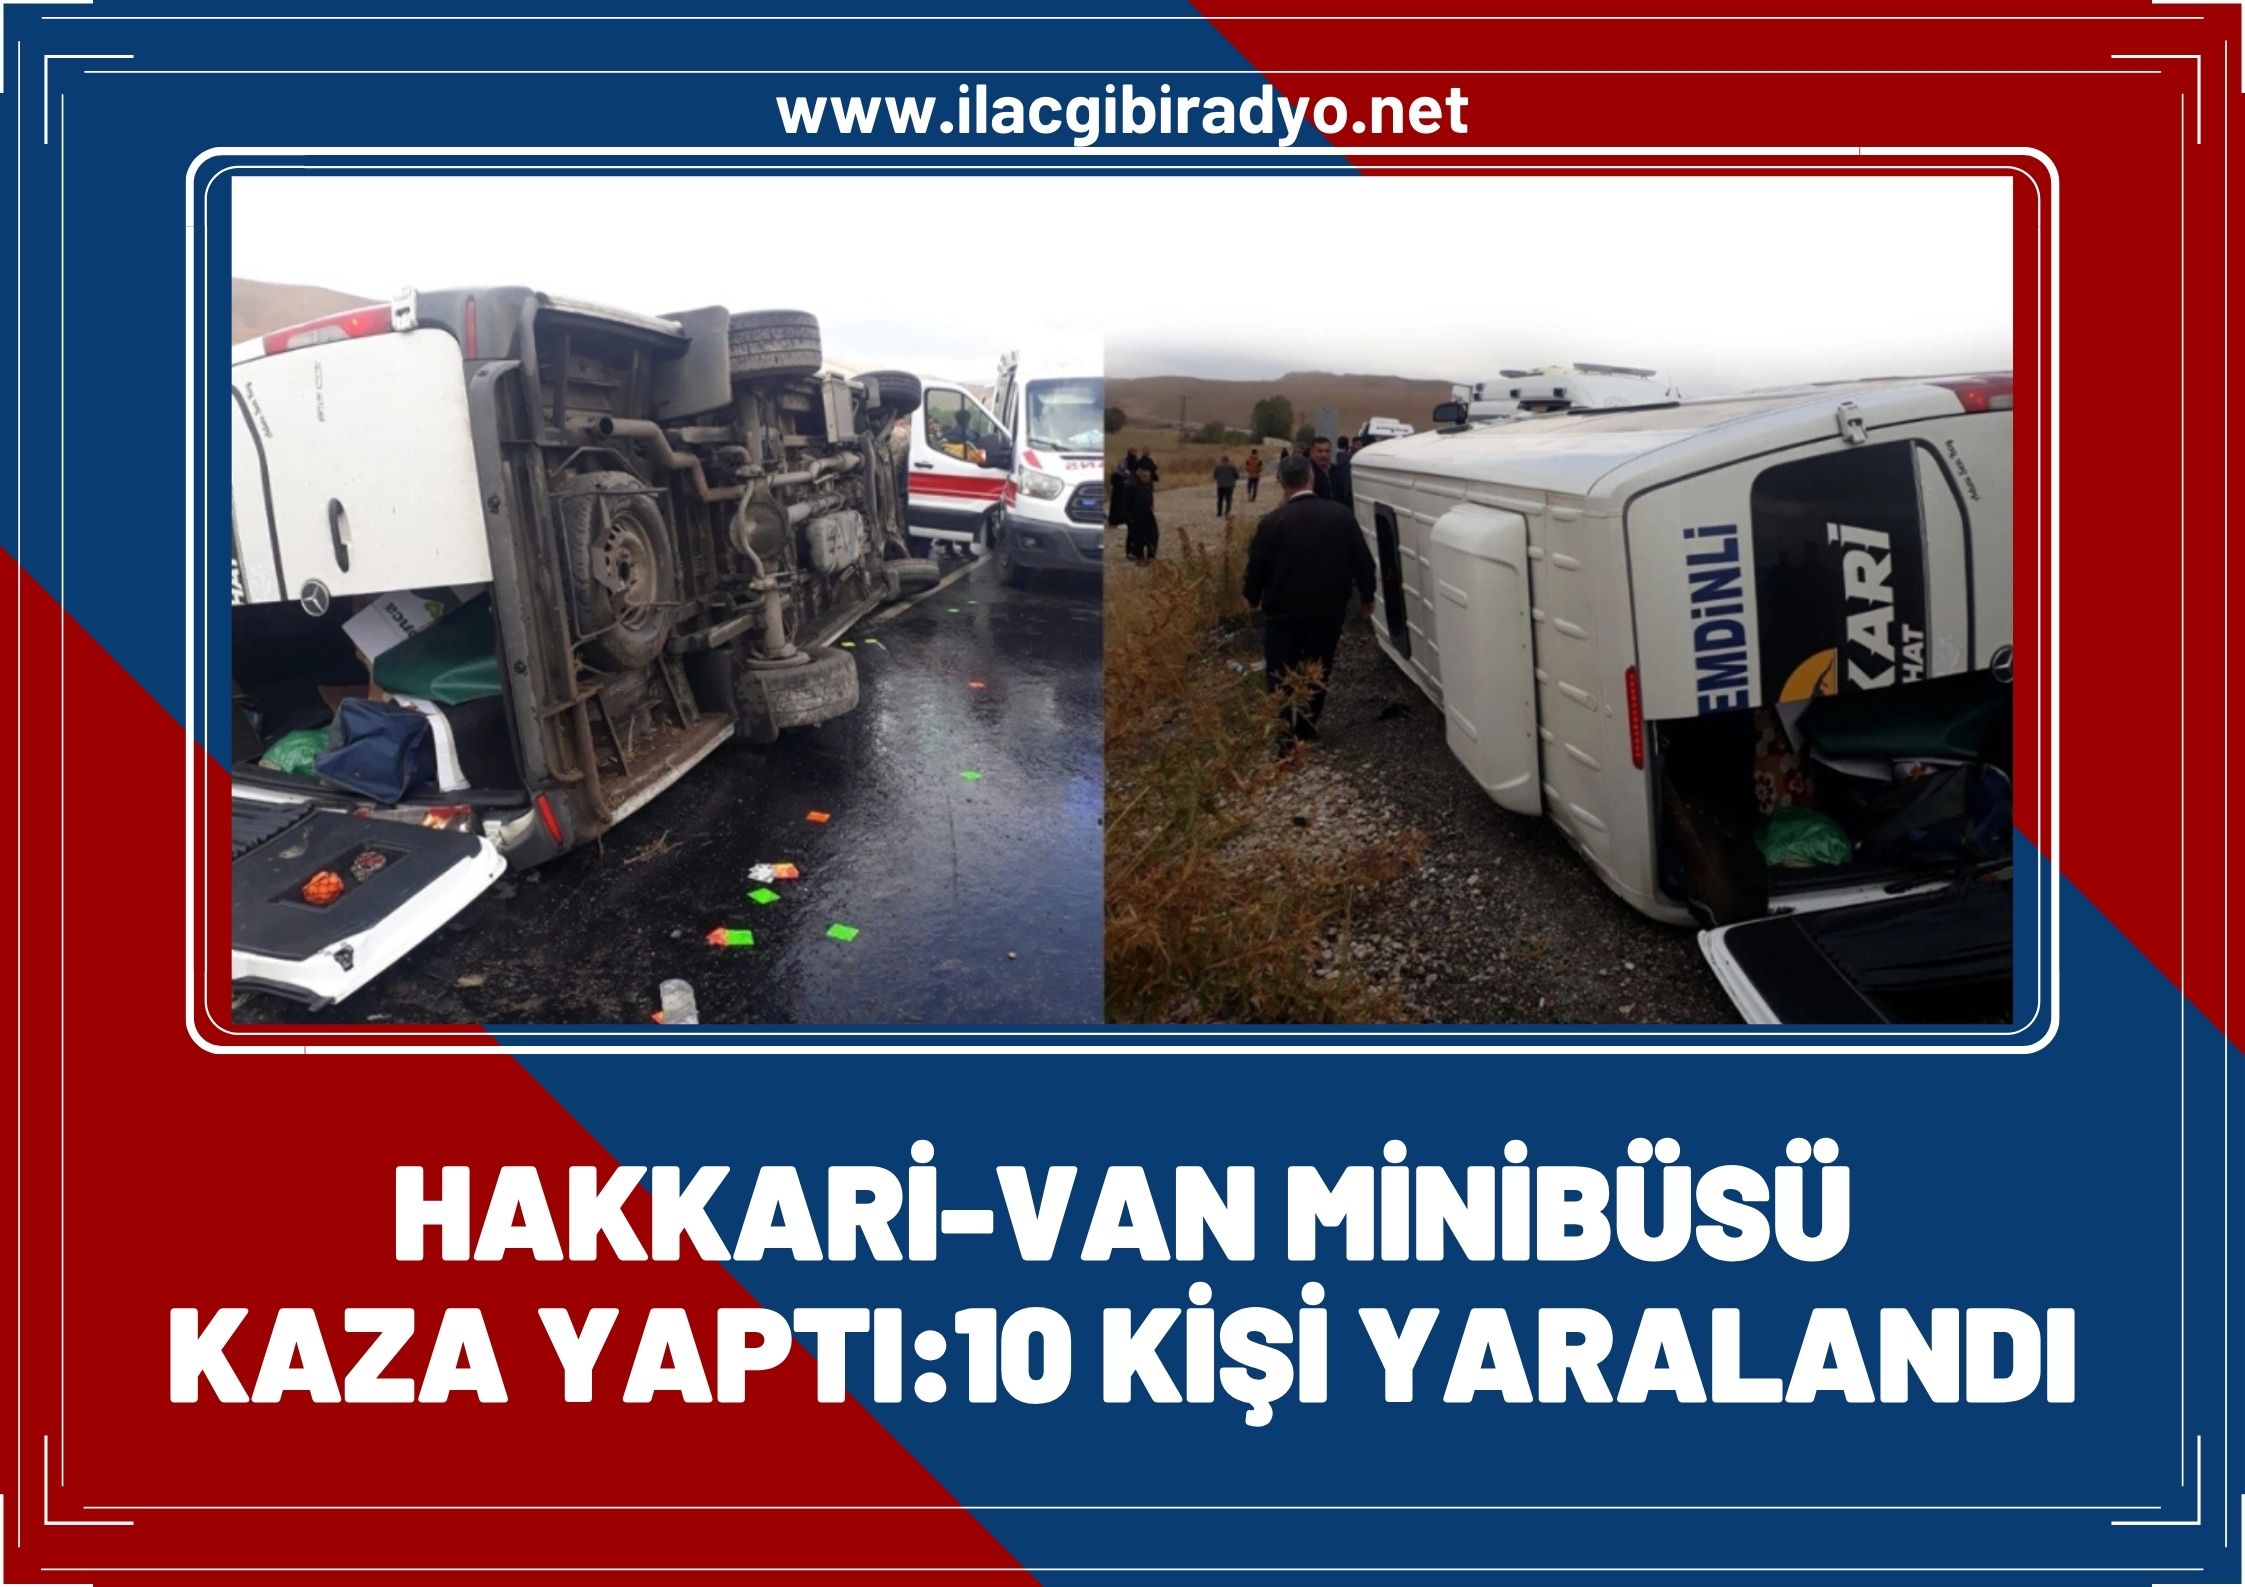 Hakkari-Van otobüsü kaza yaptı, 10 kişi yaralandı!